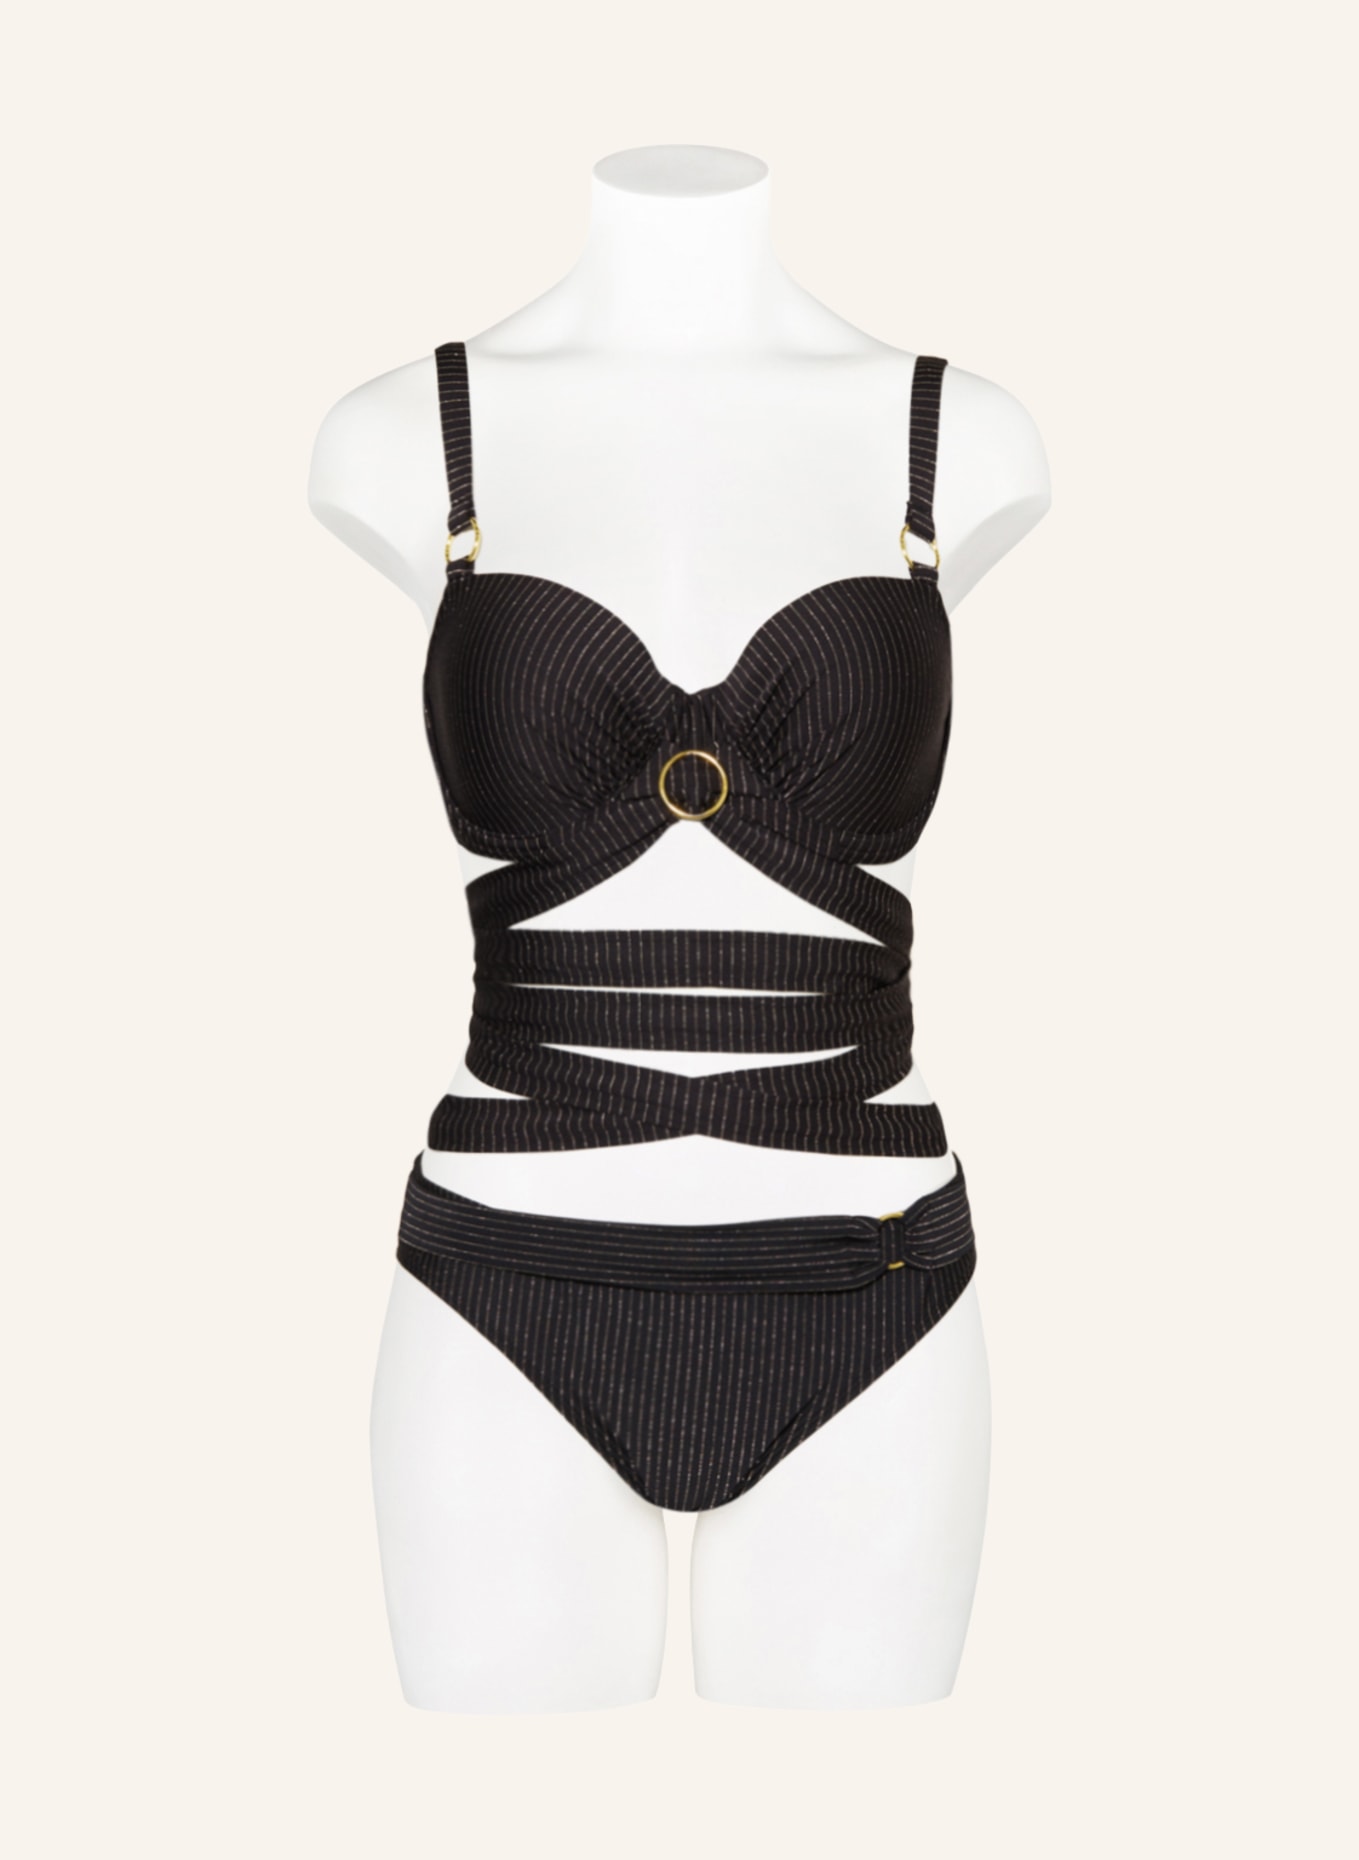 PrimaDonna Balconette bikini top SOLTA with glitter thread, Color: BLACK (Image 2)